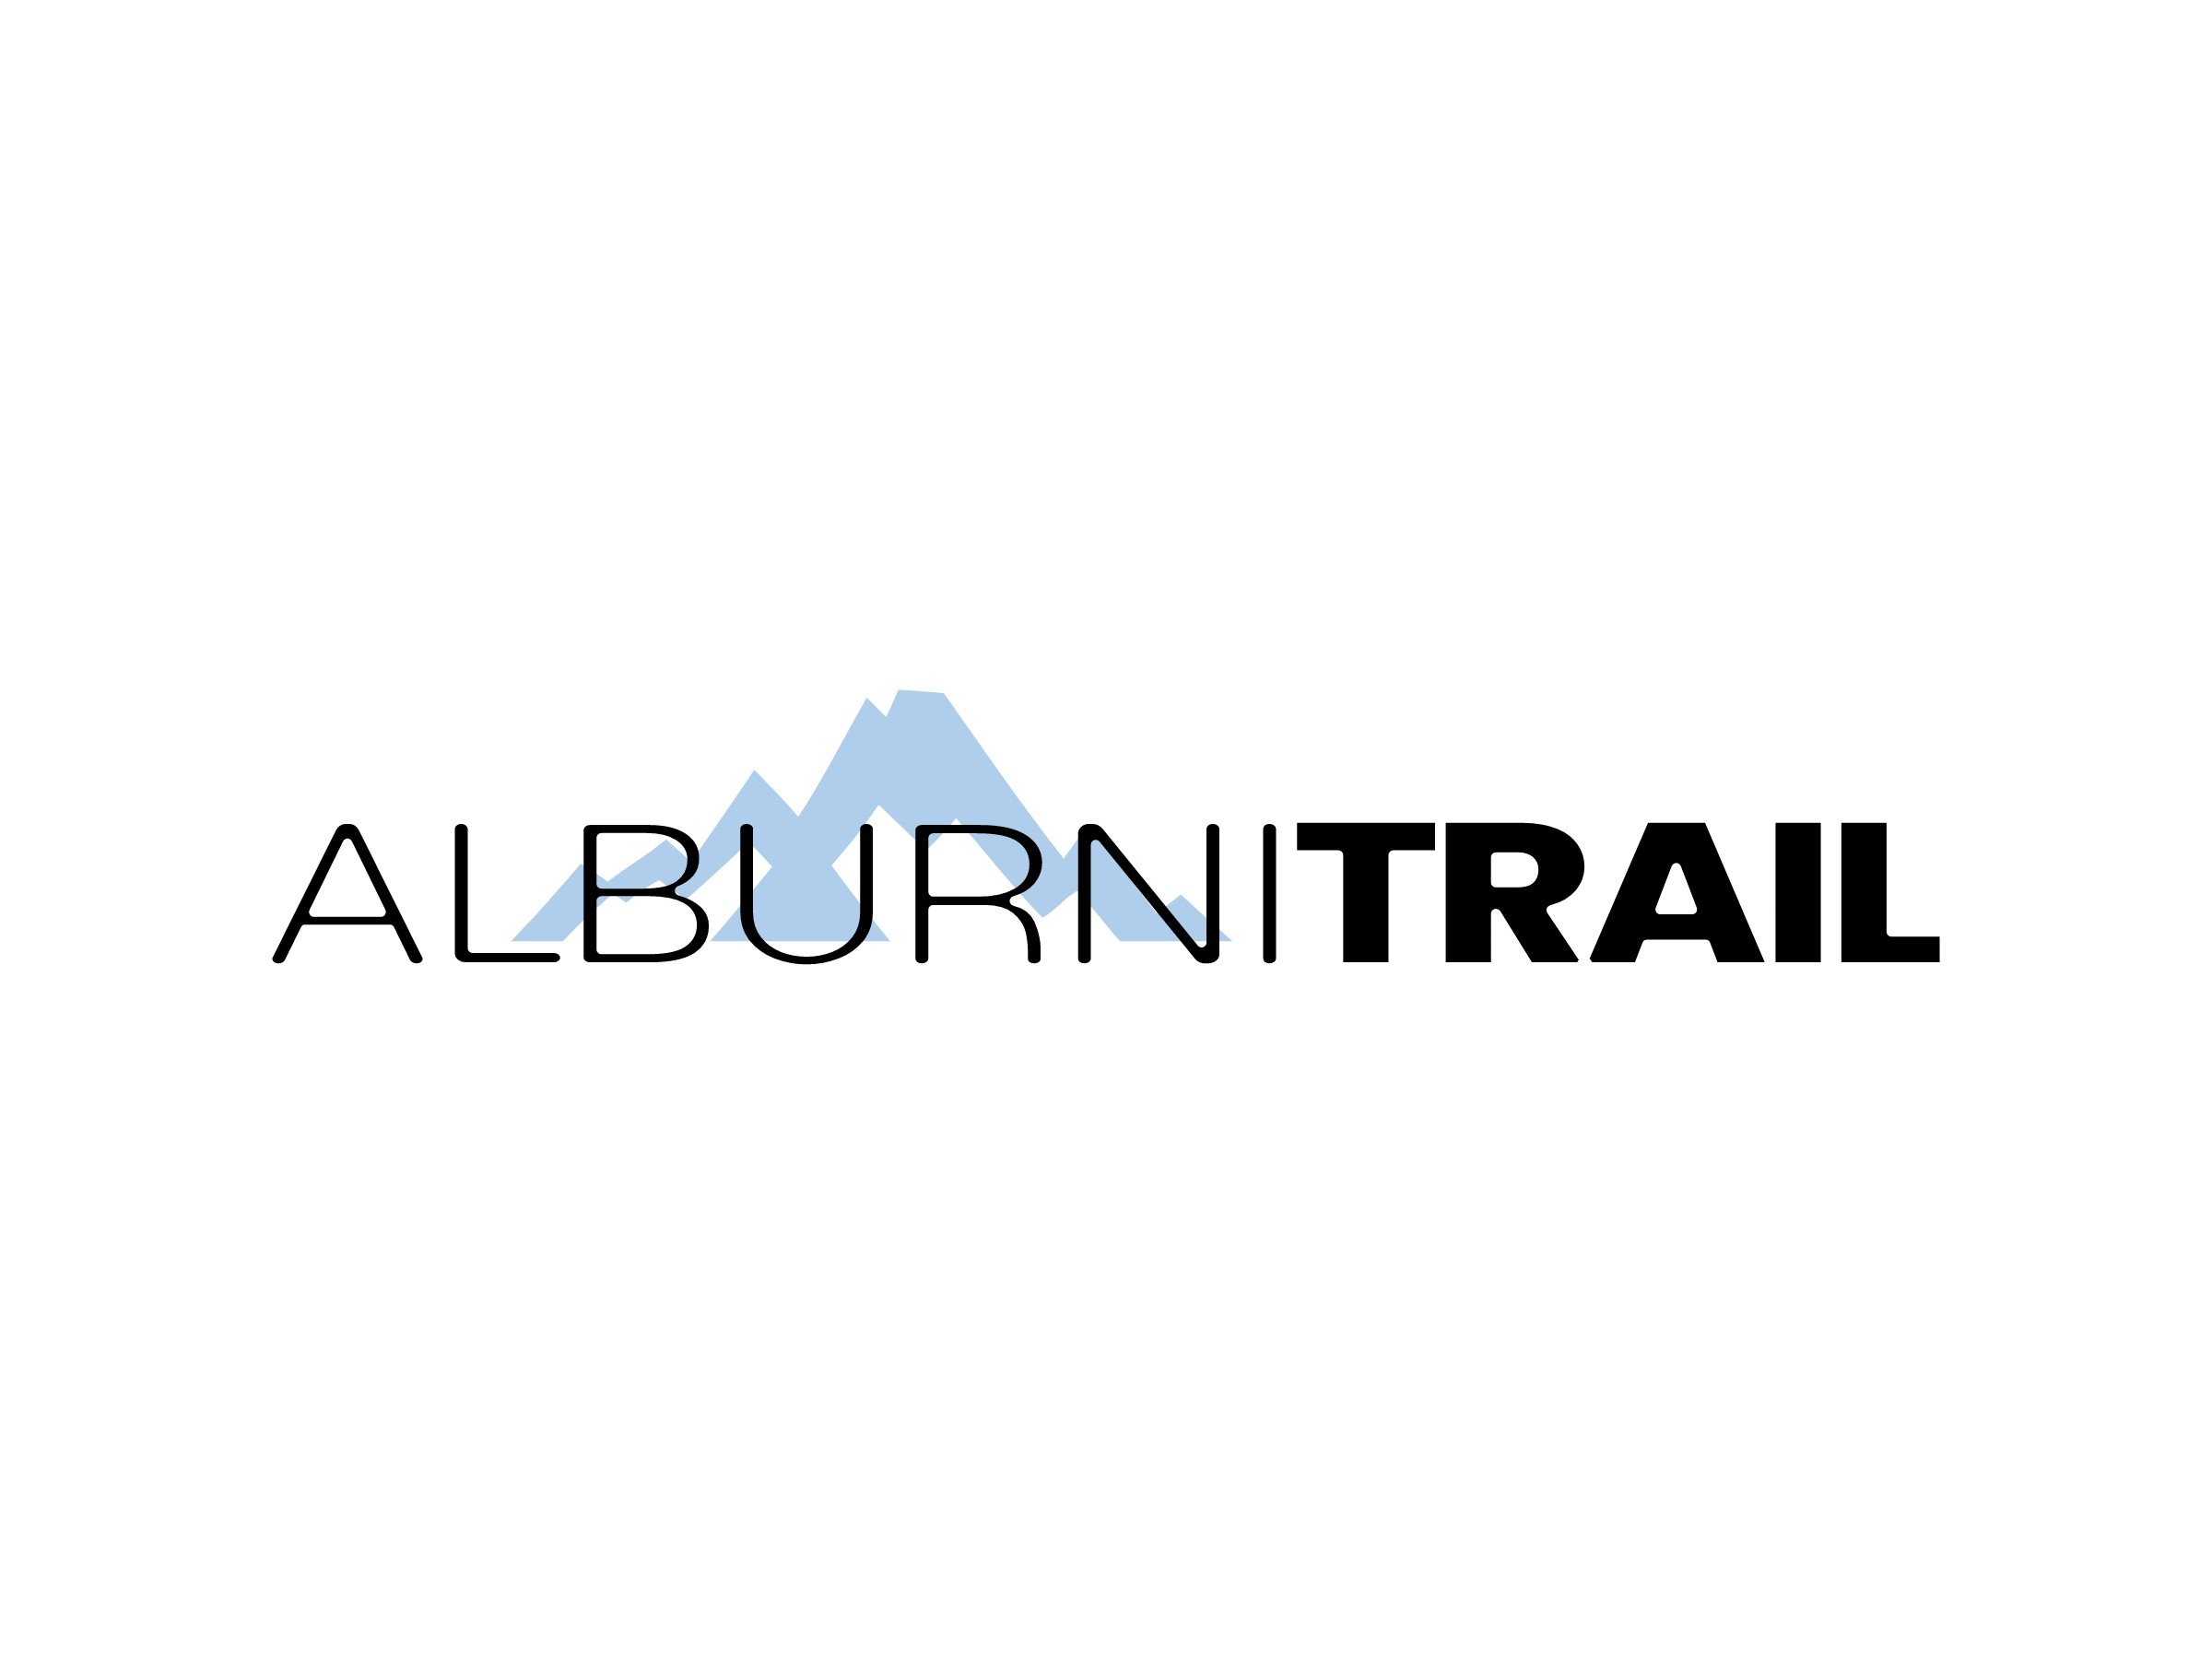 ALBURNI TRAIL logo design